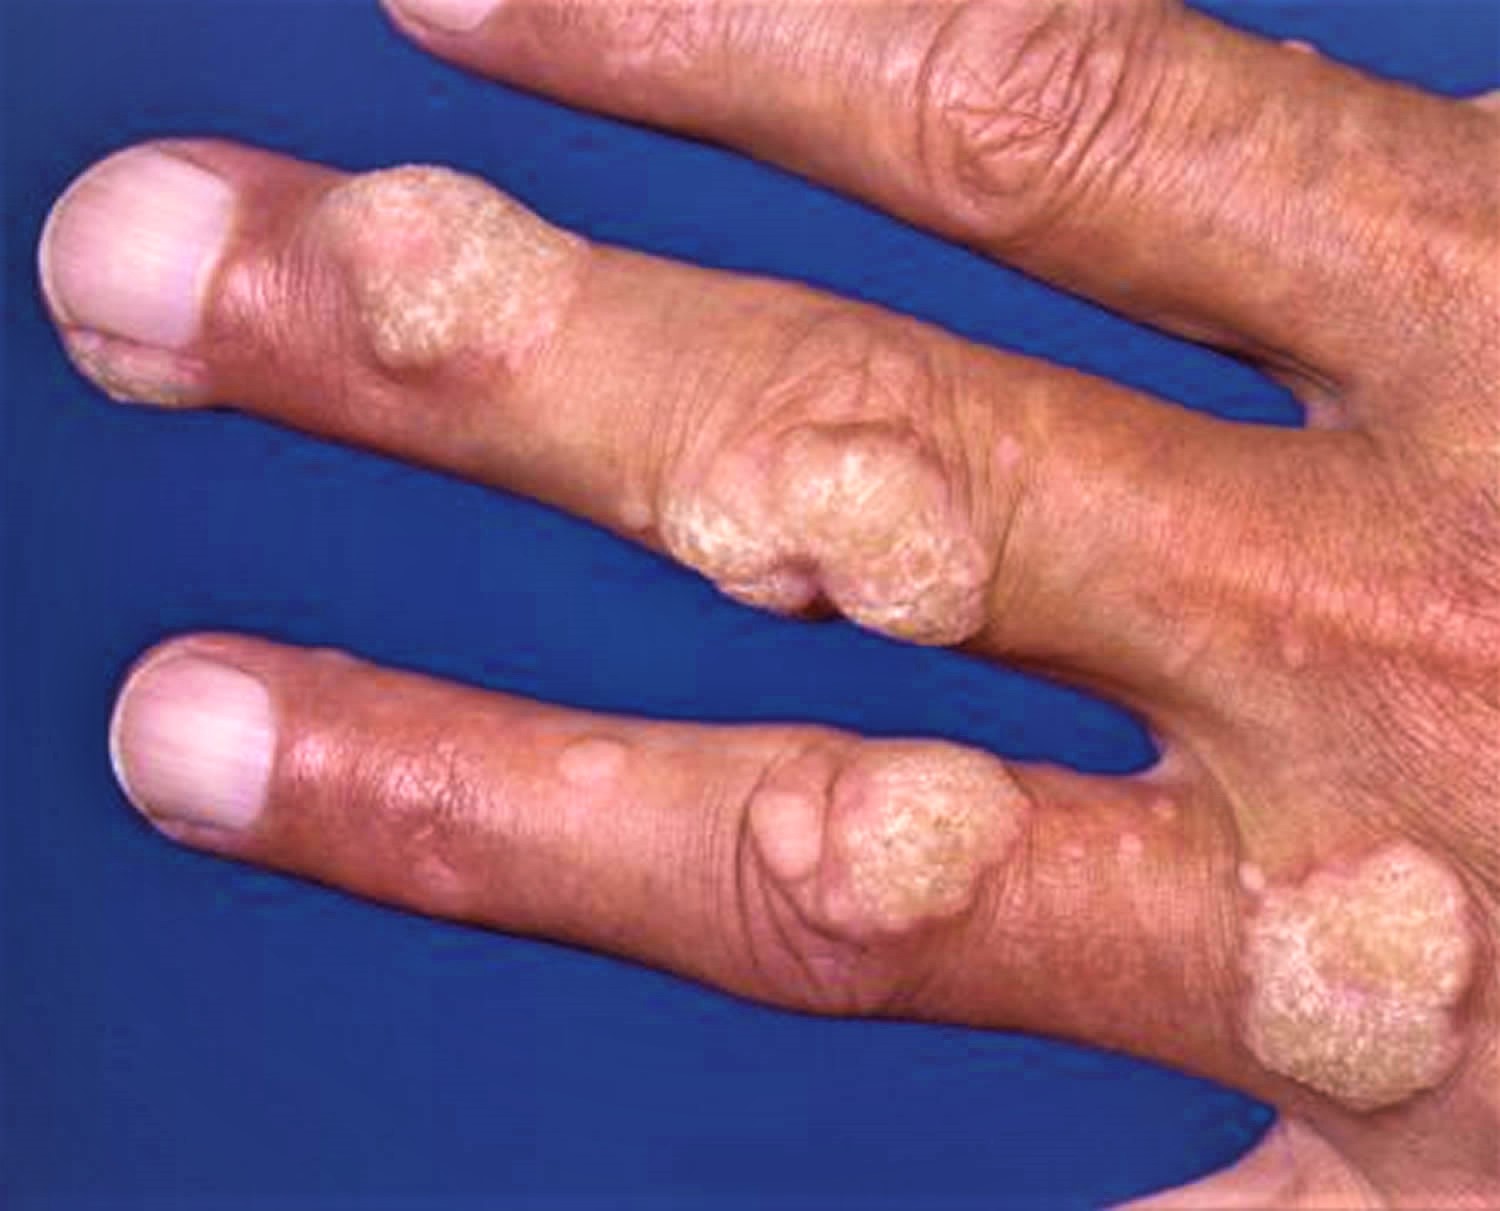 Warts Plantar Wart Wart On Finger Hands Face Wart Treatment